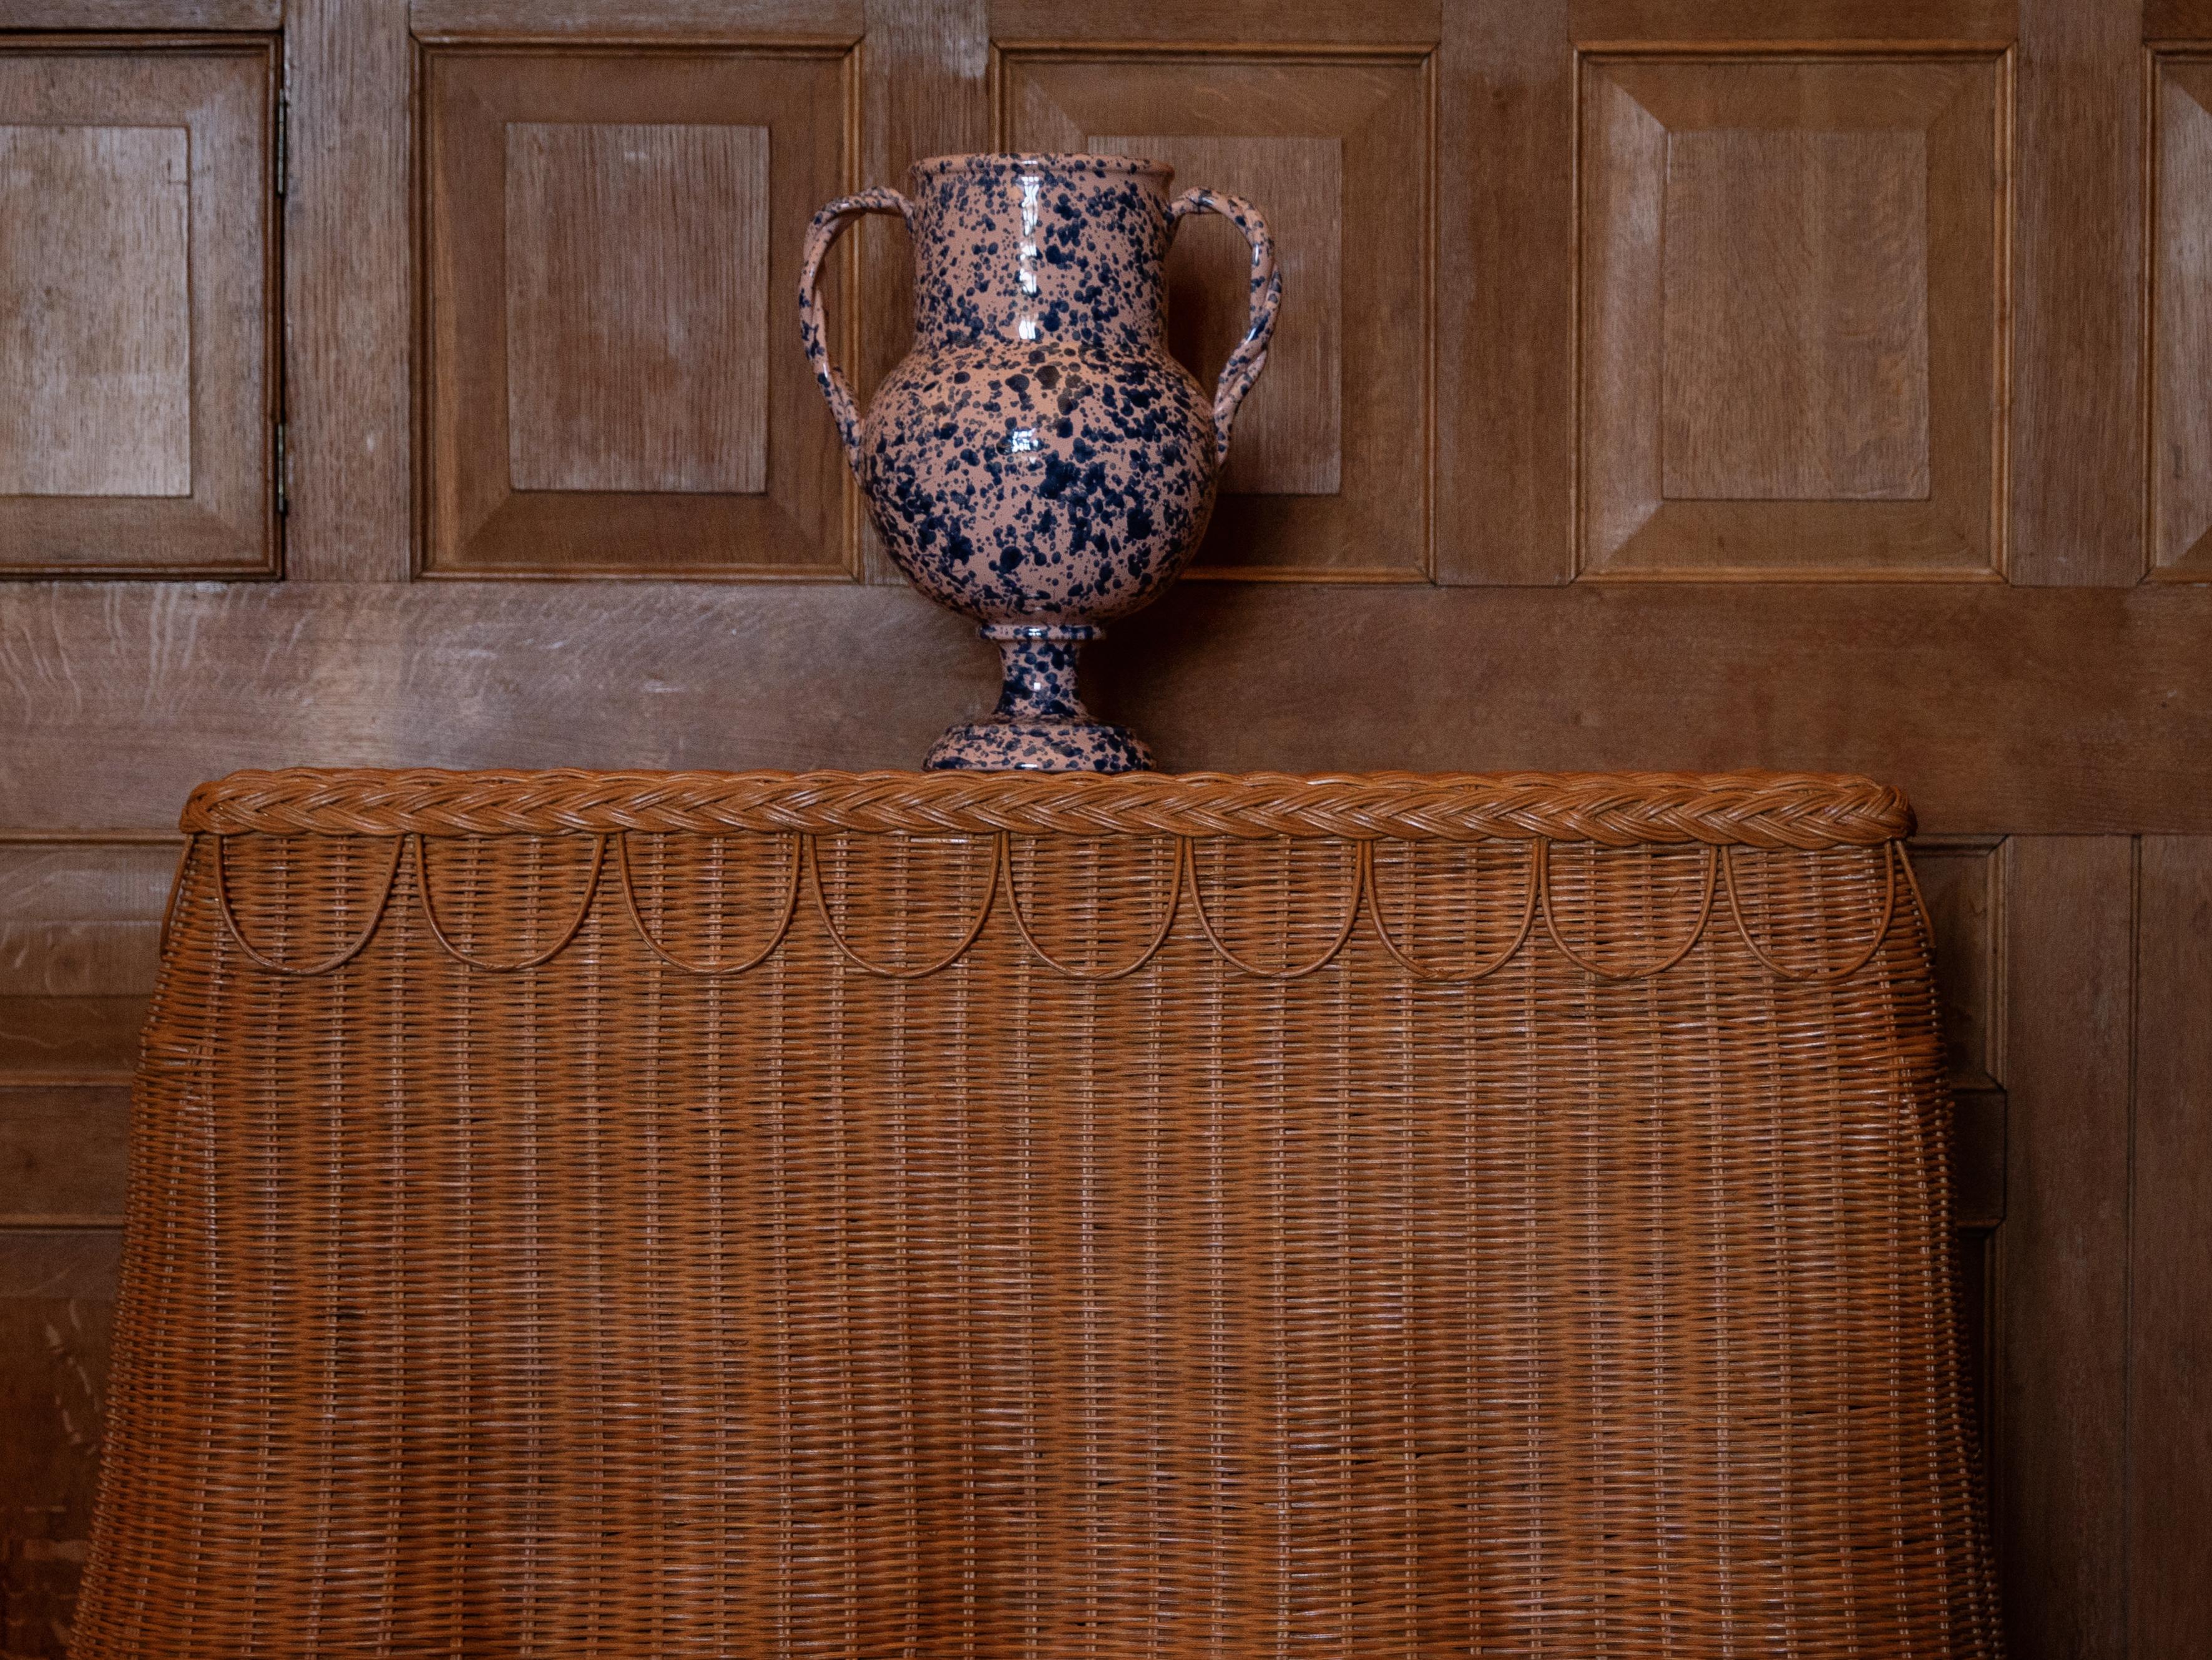 Contemporary Splatter Vase, ceramic, greek urn inspired, Large, Pink and Blue